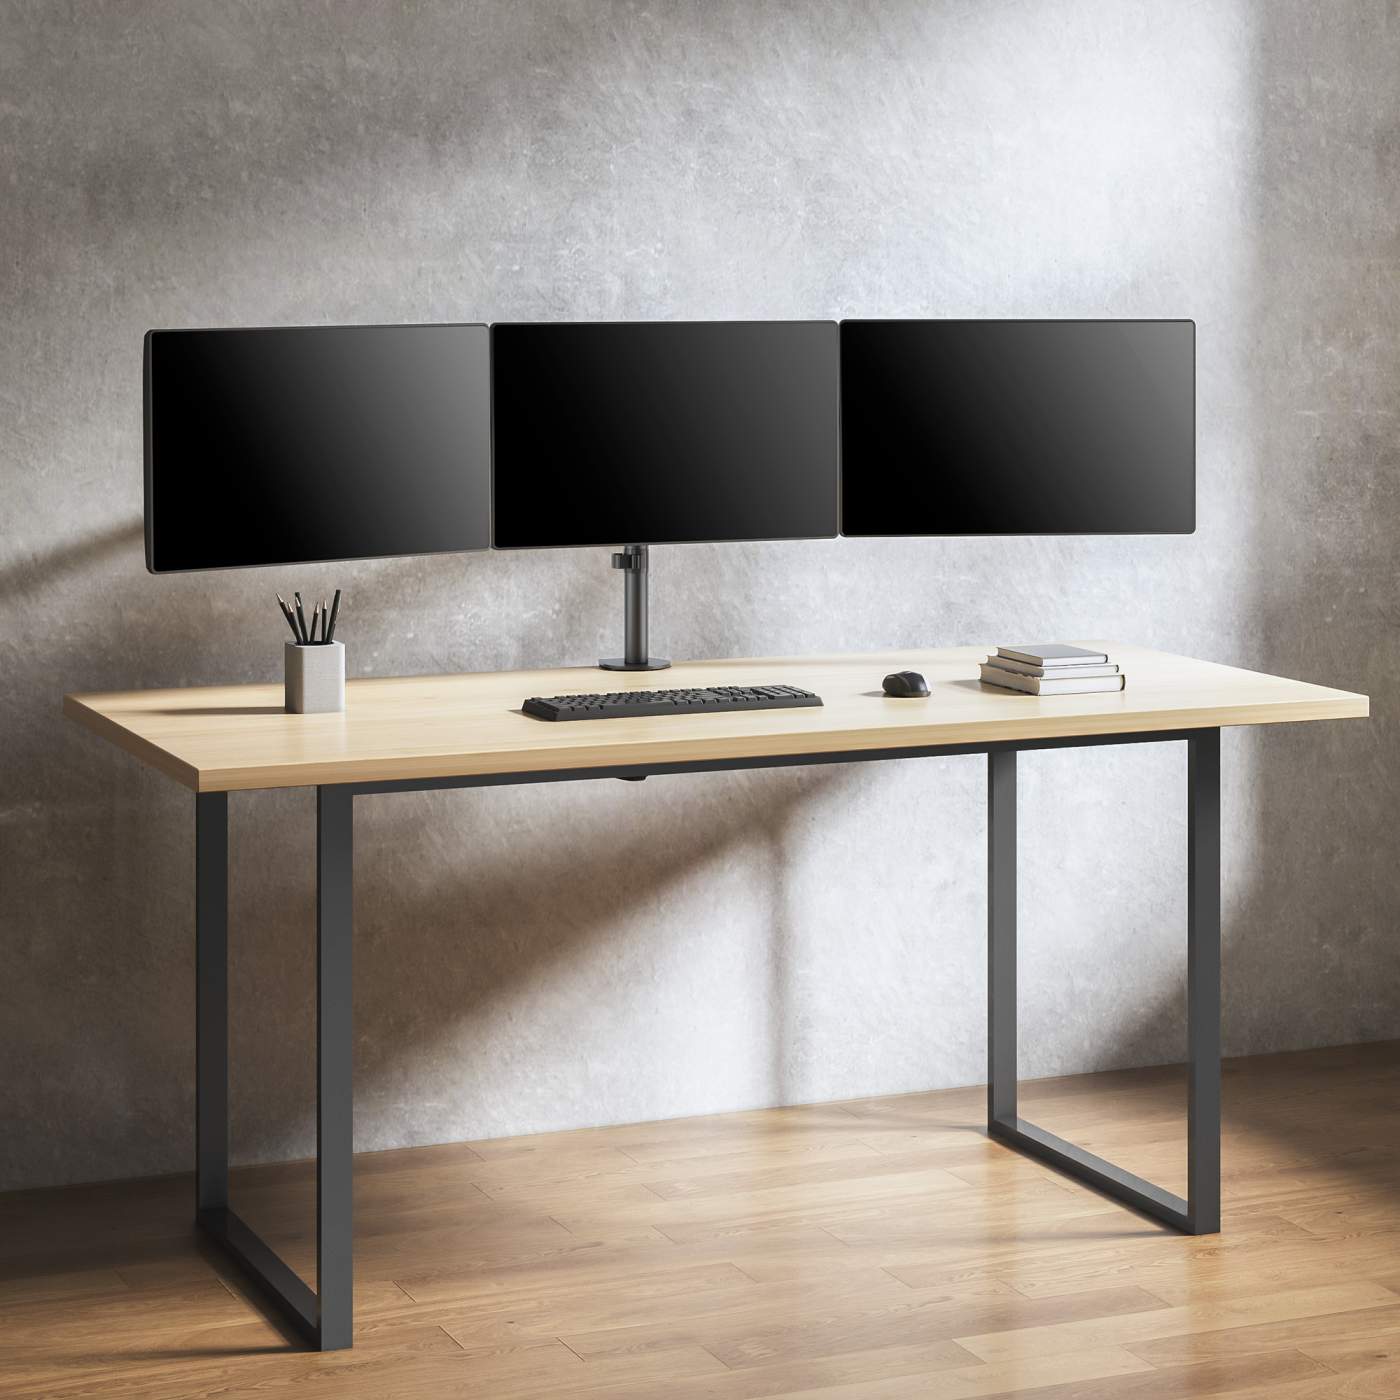 Soporte para 3 monitores-2-pantallas sobre mesa escritorio